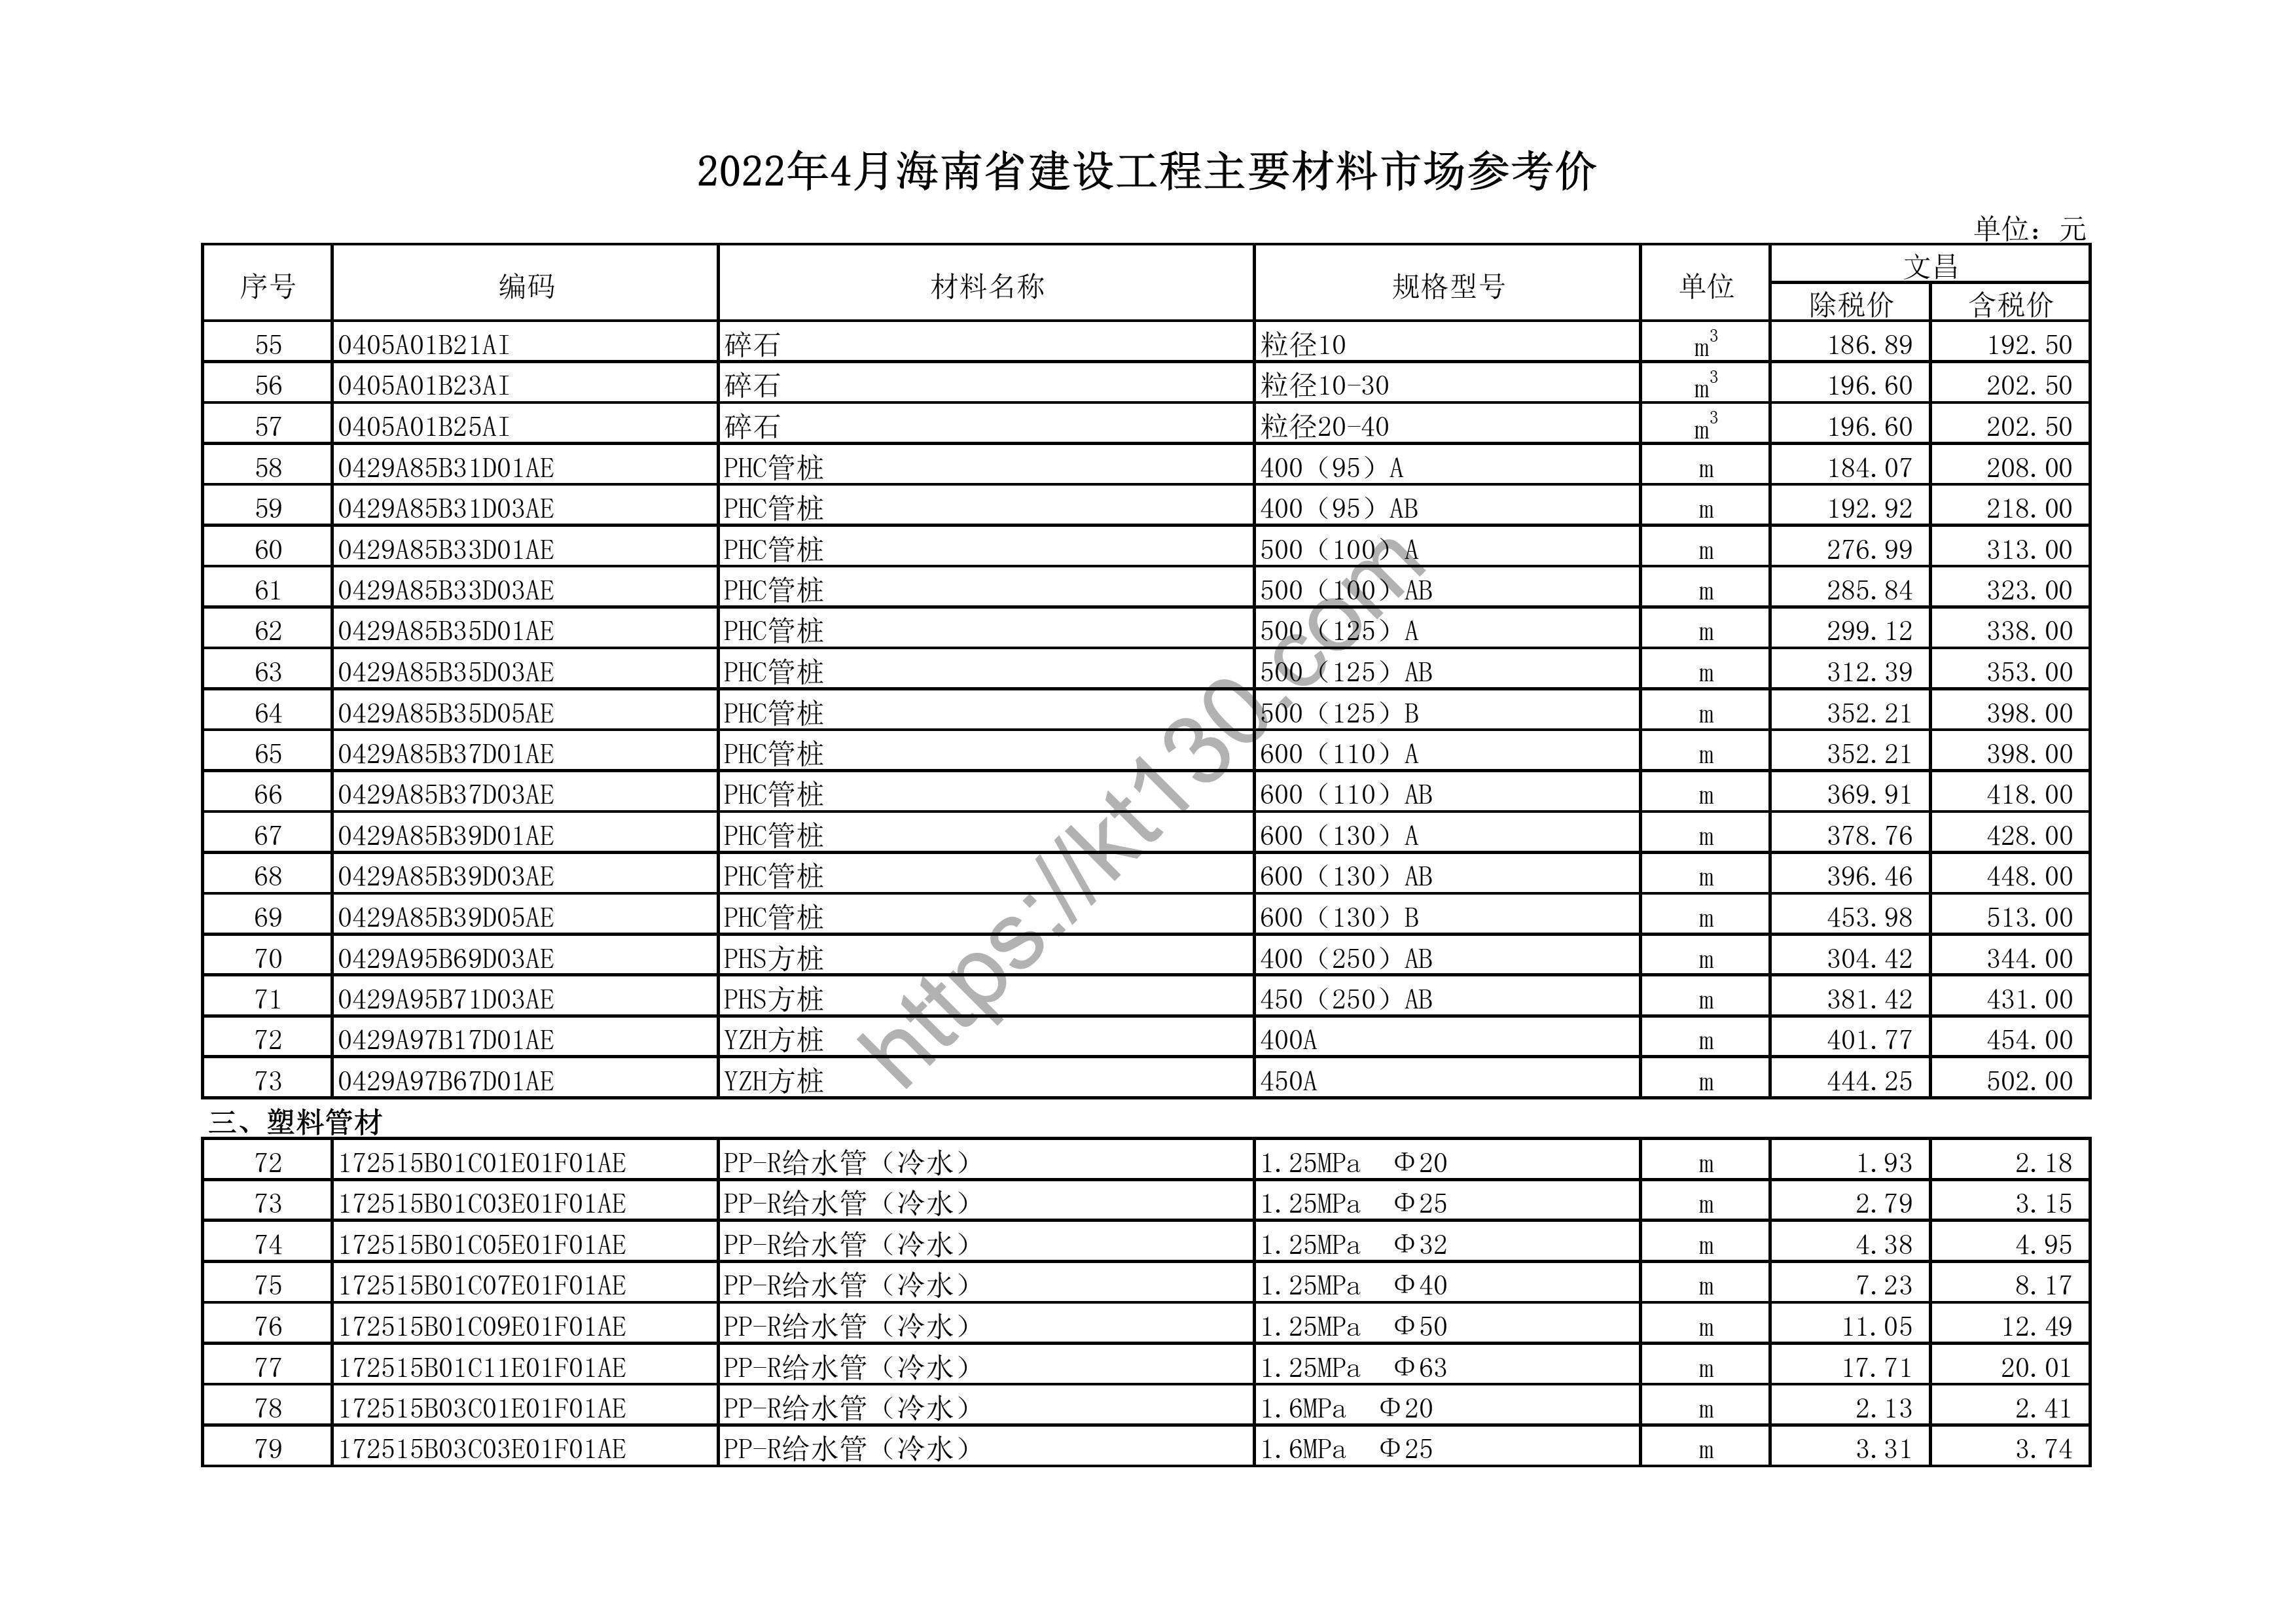 海南省2022年4月建筑材料价_粉末喷涂铝合金_44130